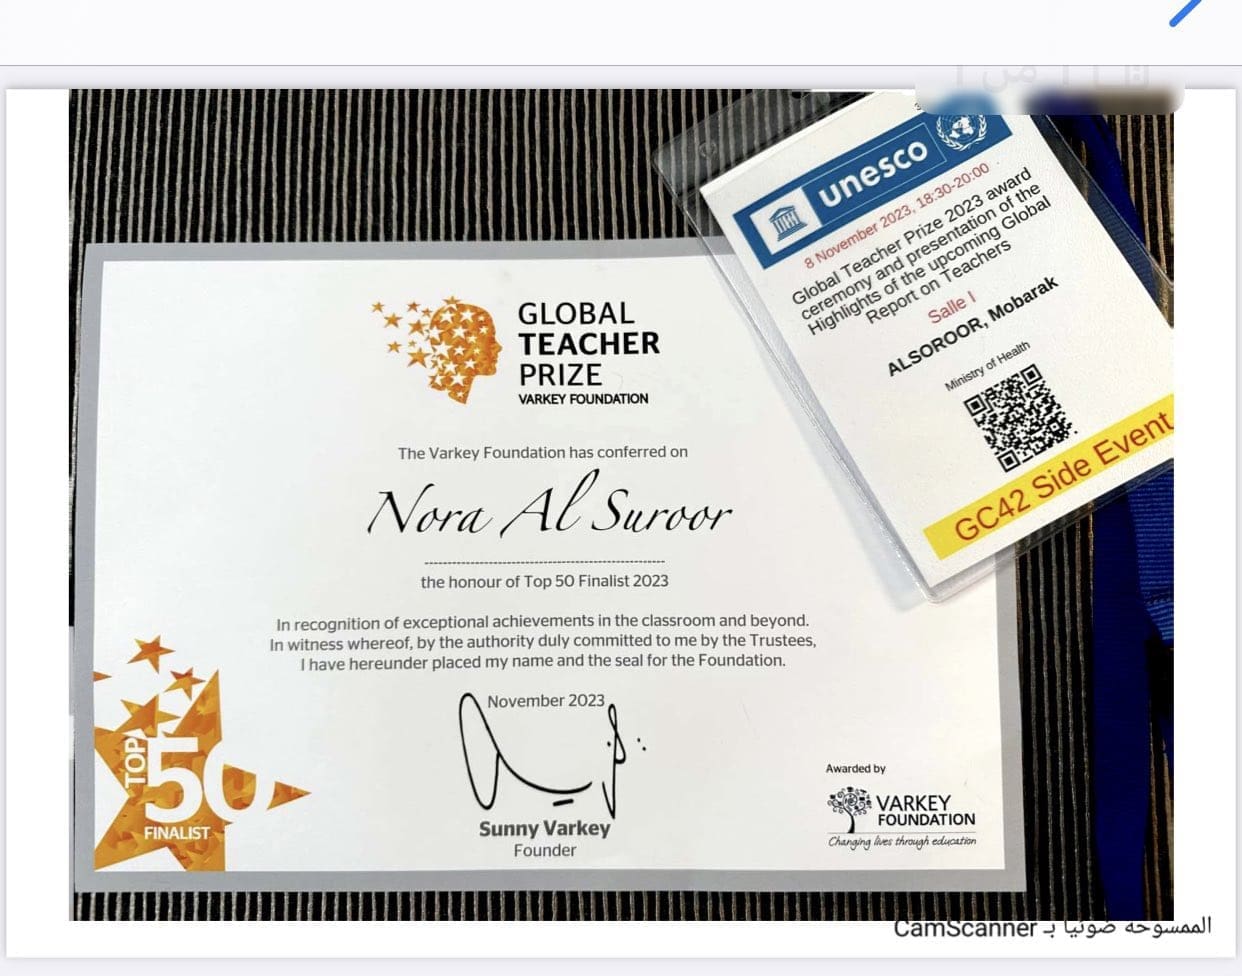 تكريم المعلمة السعودية نورة هادي آل سرور بجائزة "فاركي العالمية" للتميز في مجال التعليم